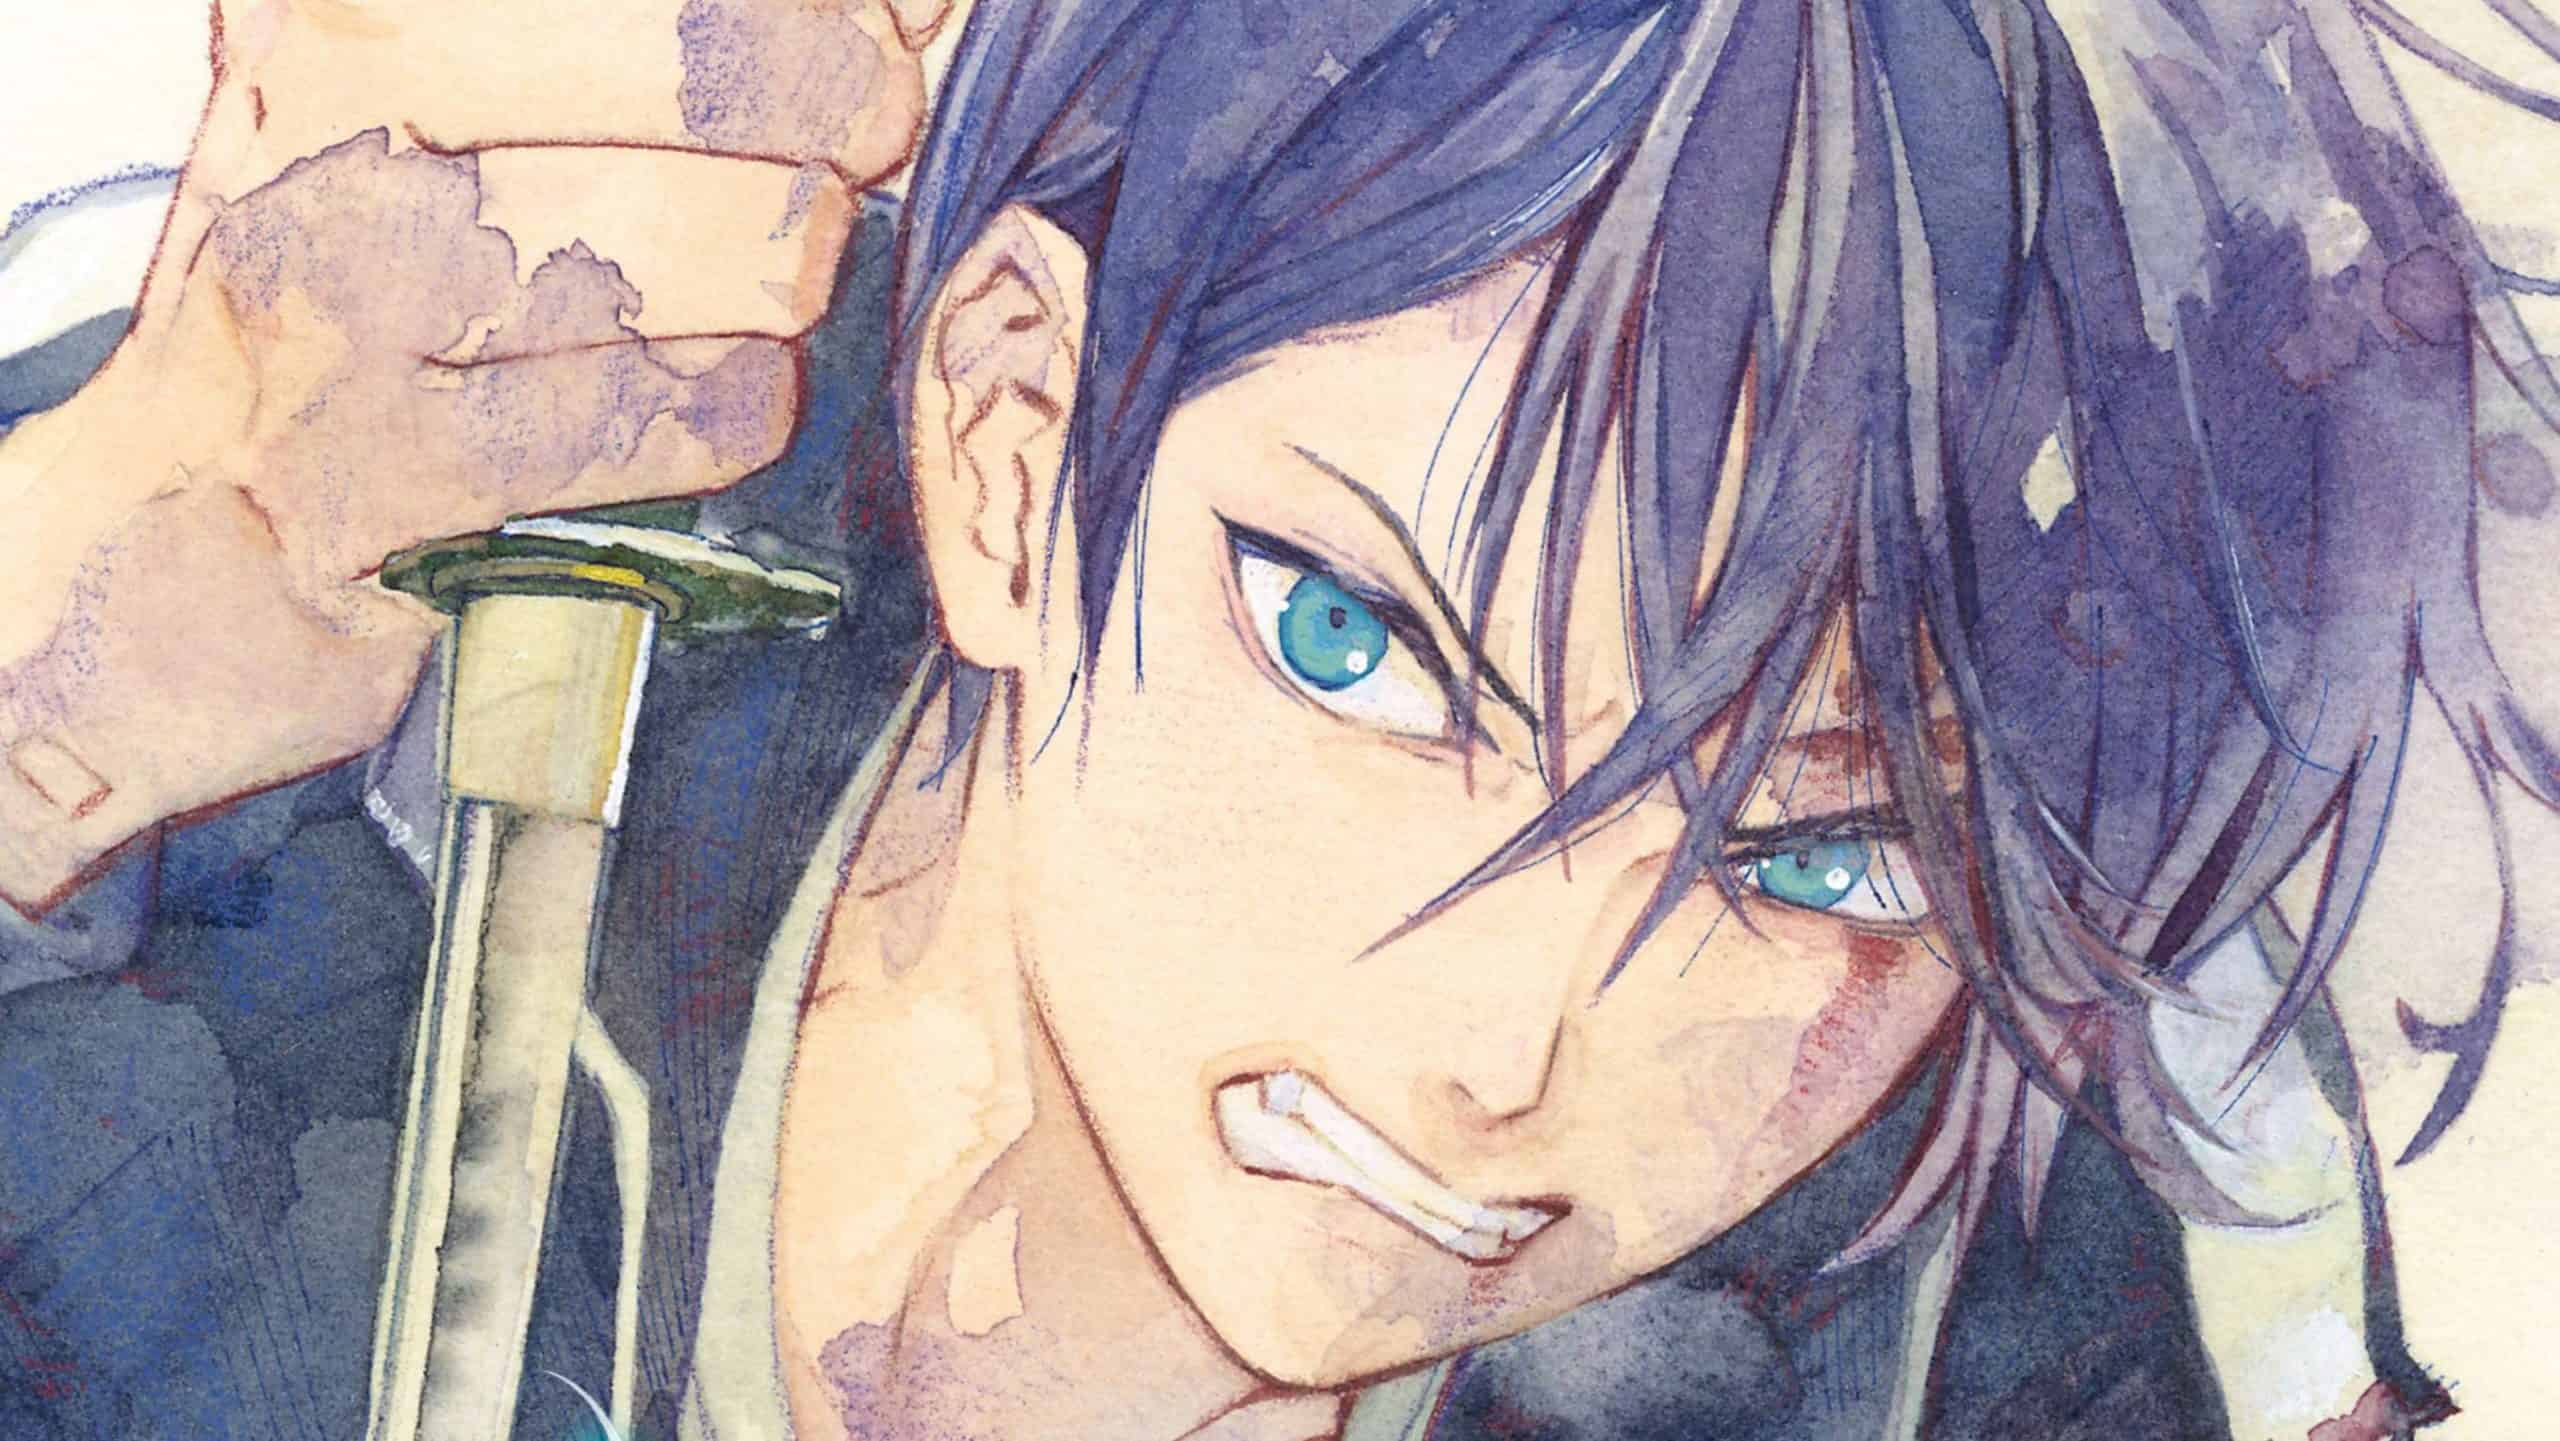 Is Noragami Manga Finished? Explained